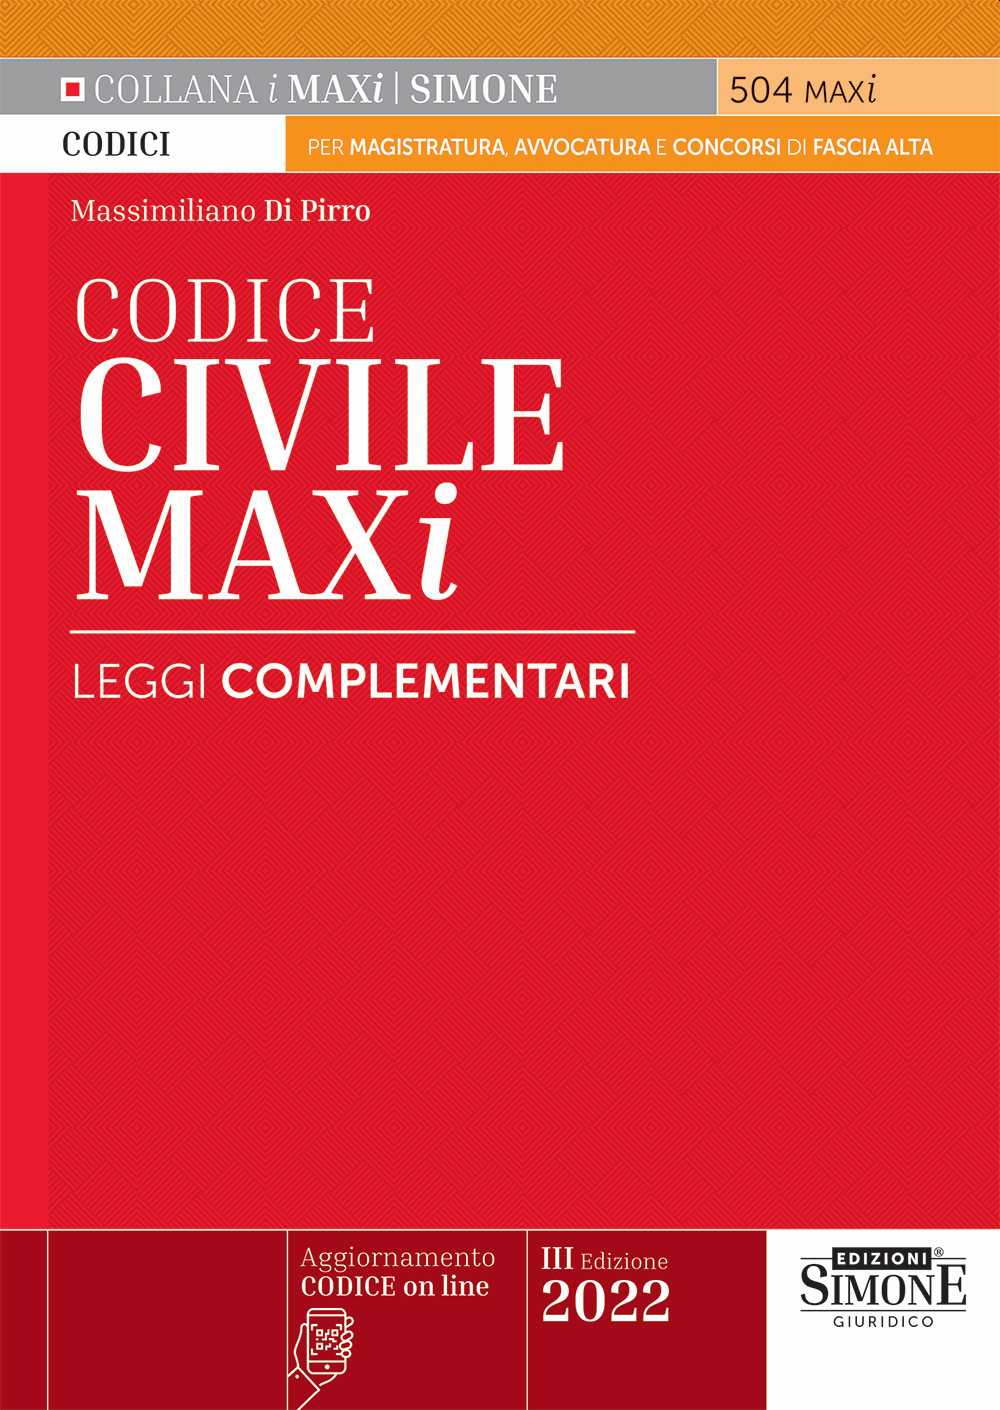 Codice Civile Maxi 2022